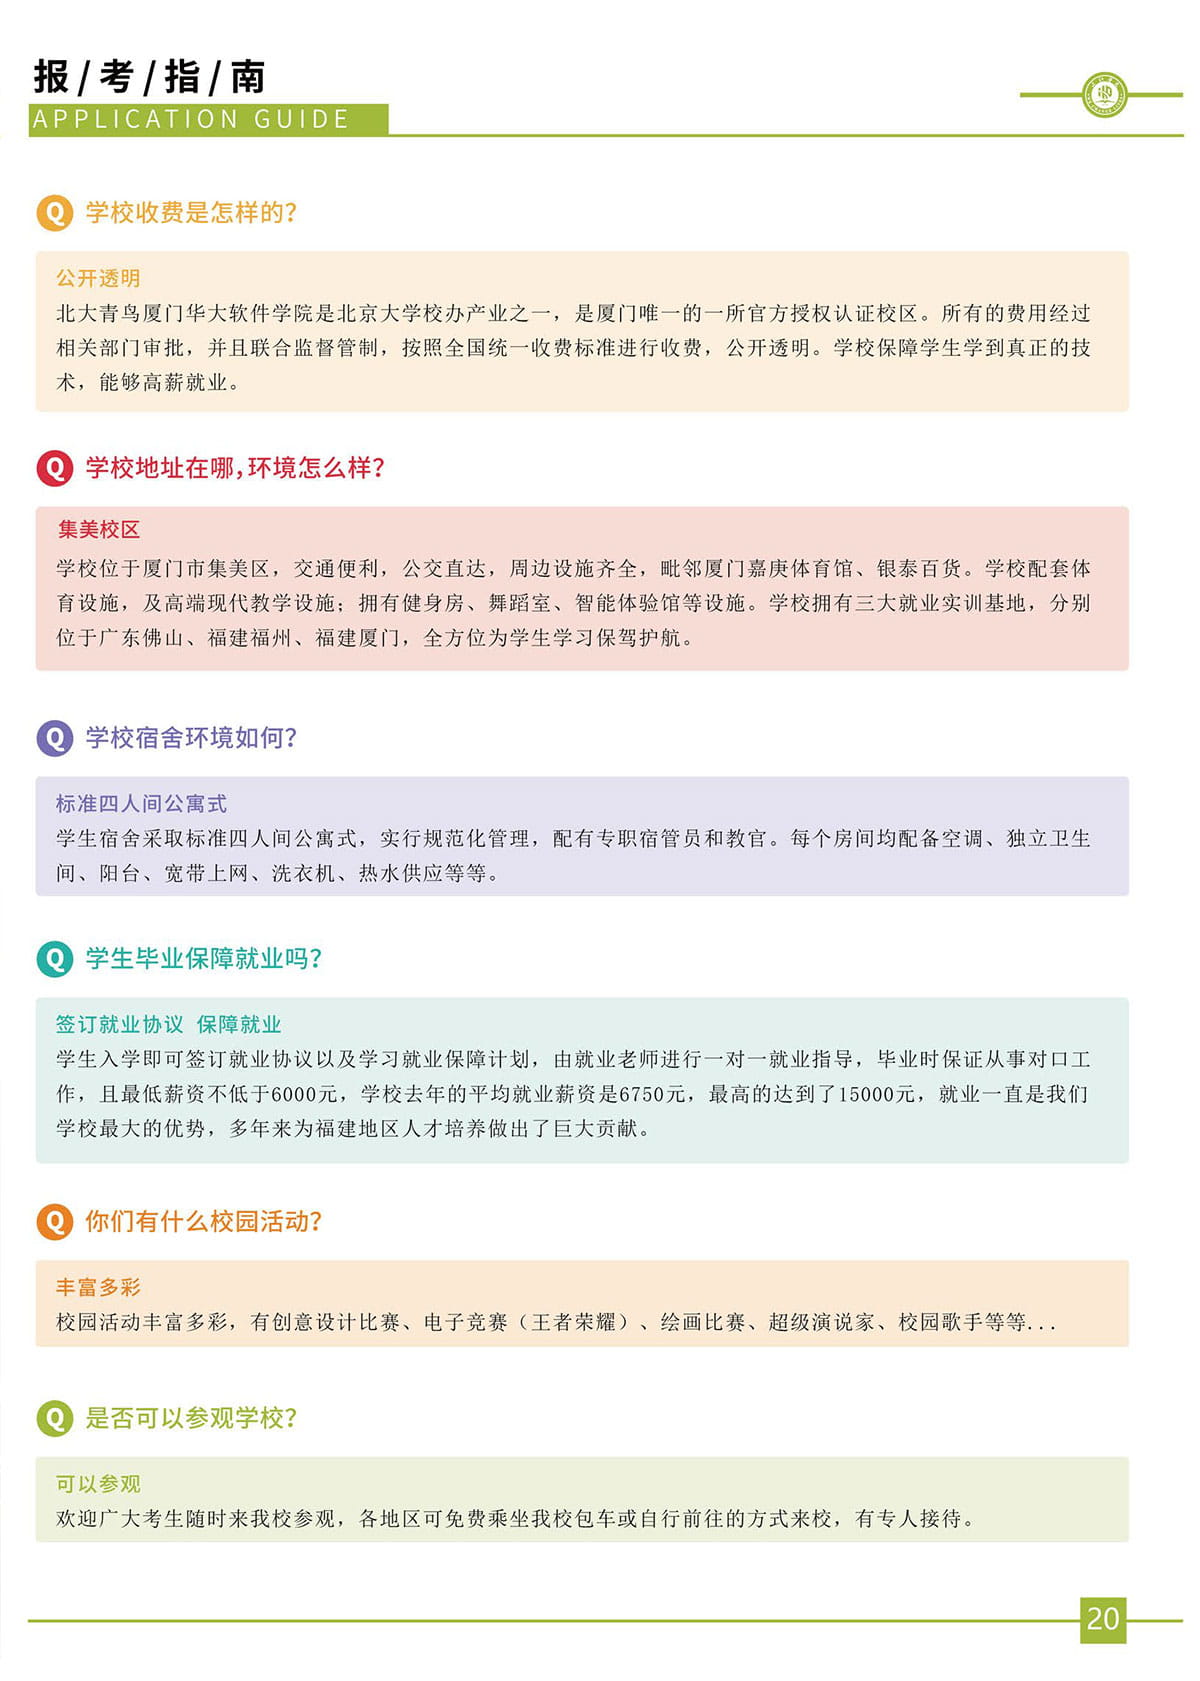 厦门初中生职业技术学校招生简章(图21)